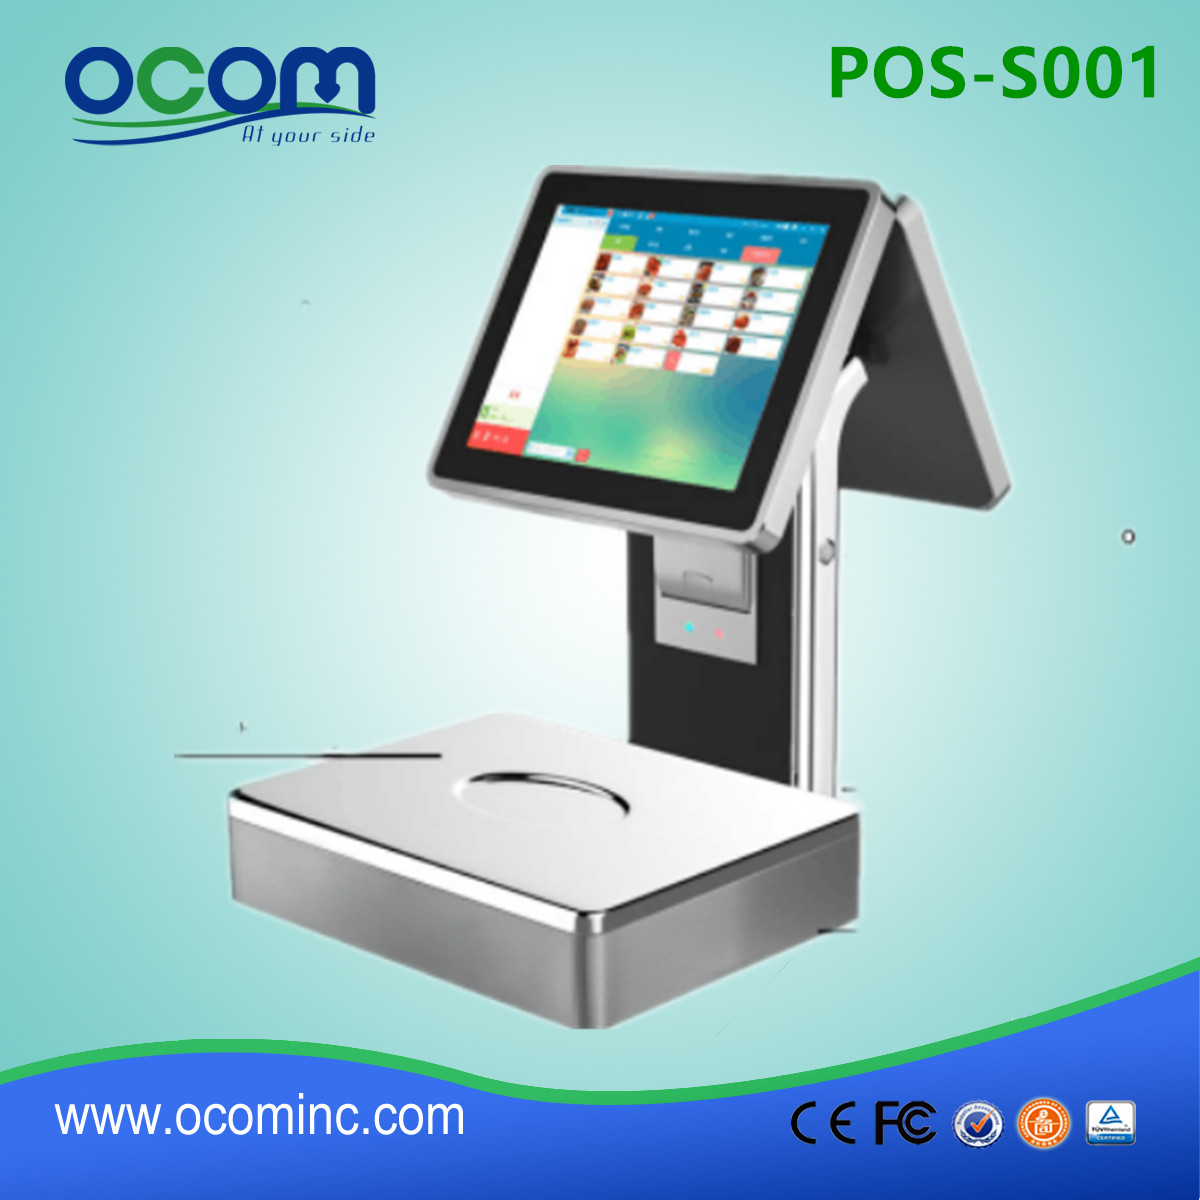 POS-S001-Nieuw model touchscreen POS-weegschaal met 58 mm-printer